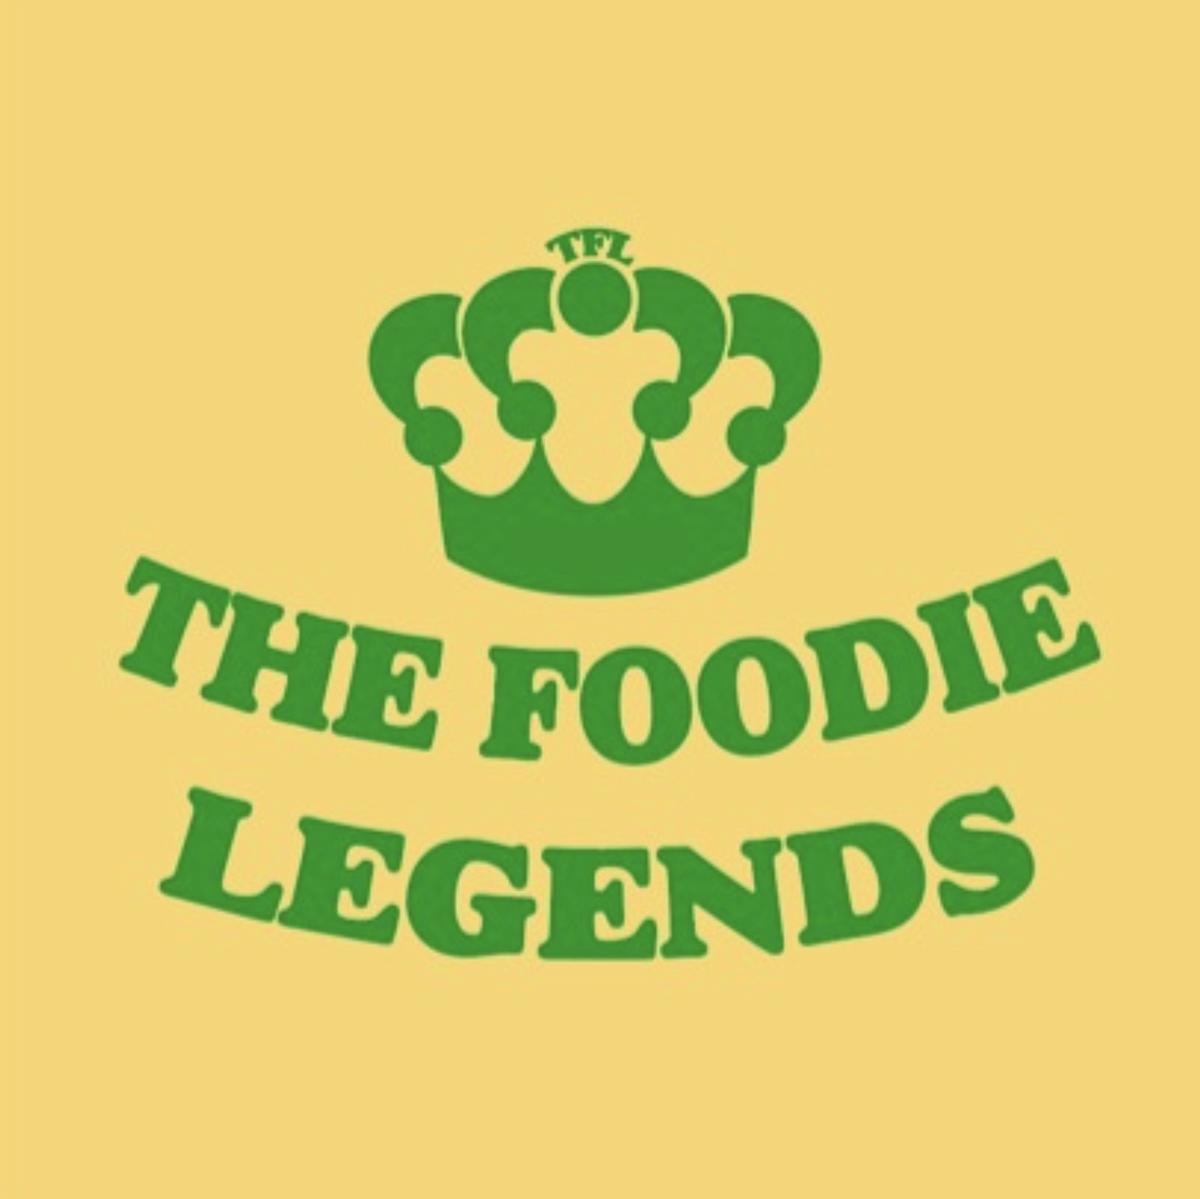 Foodie legends